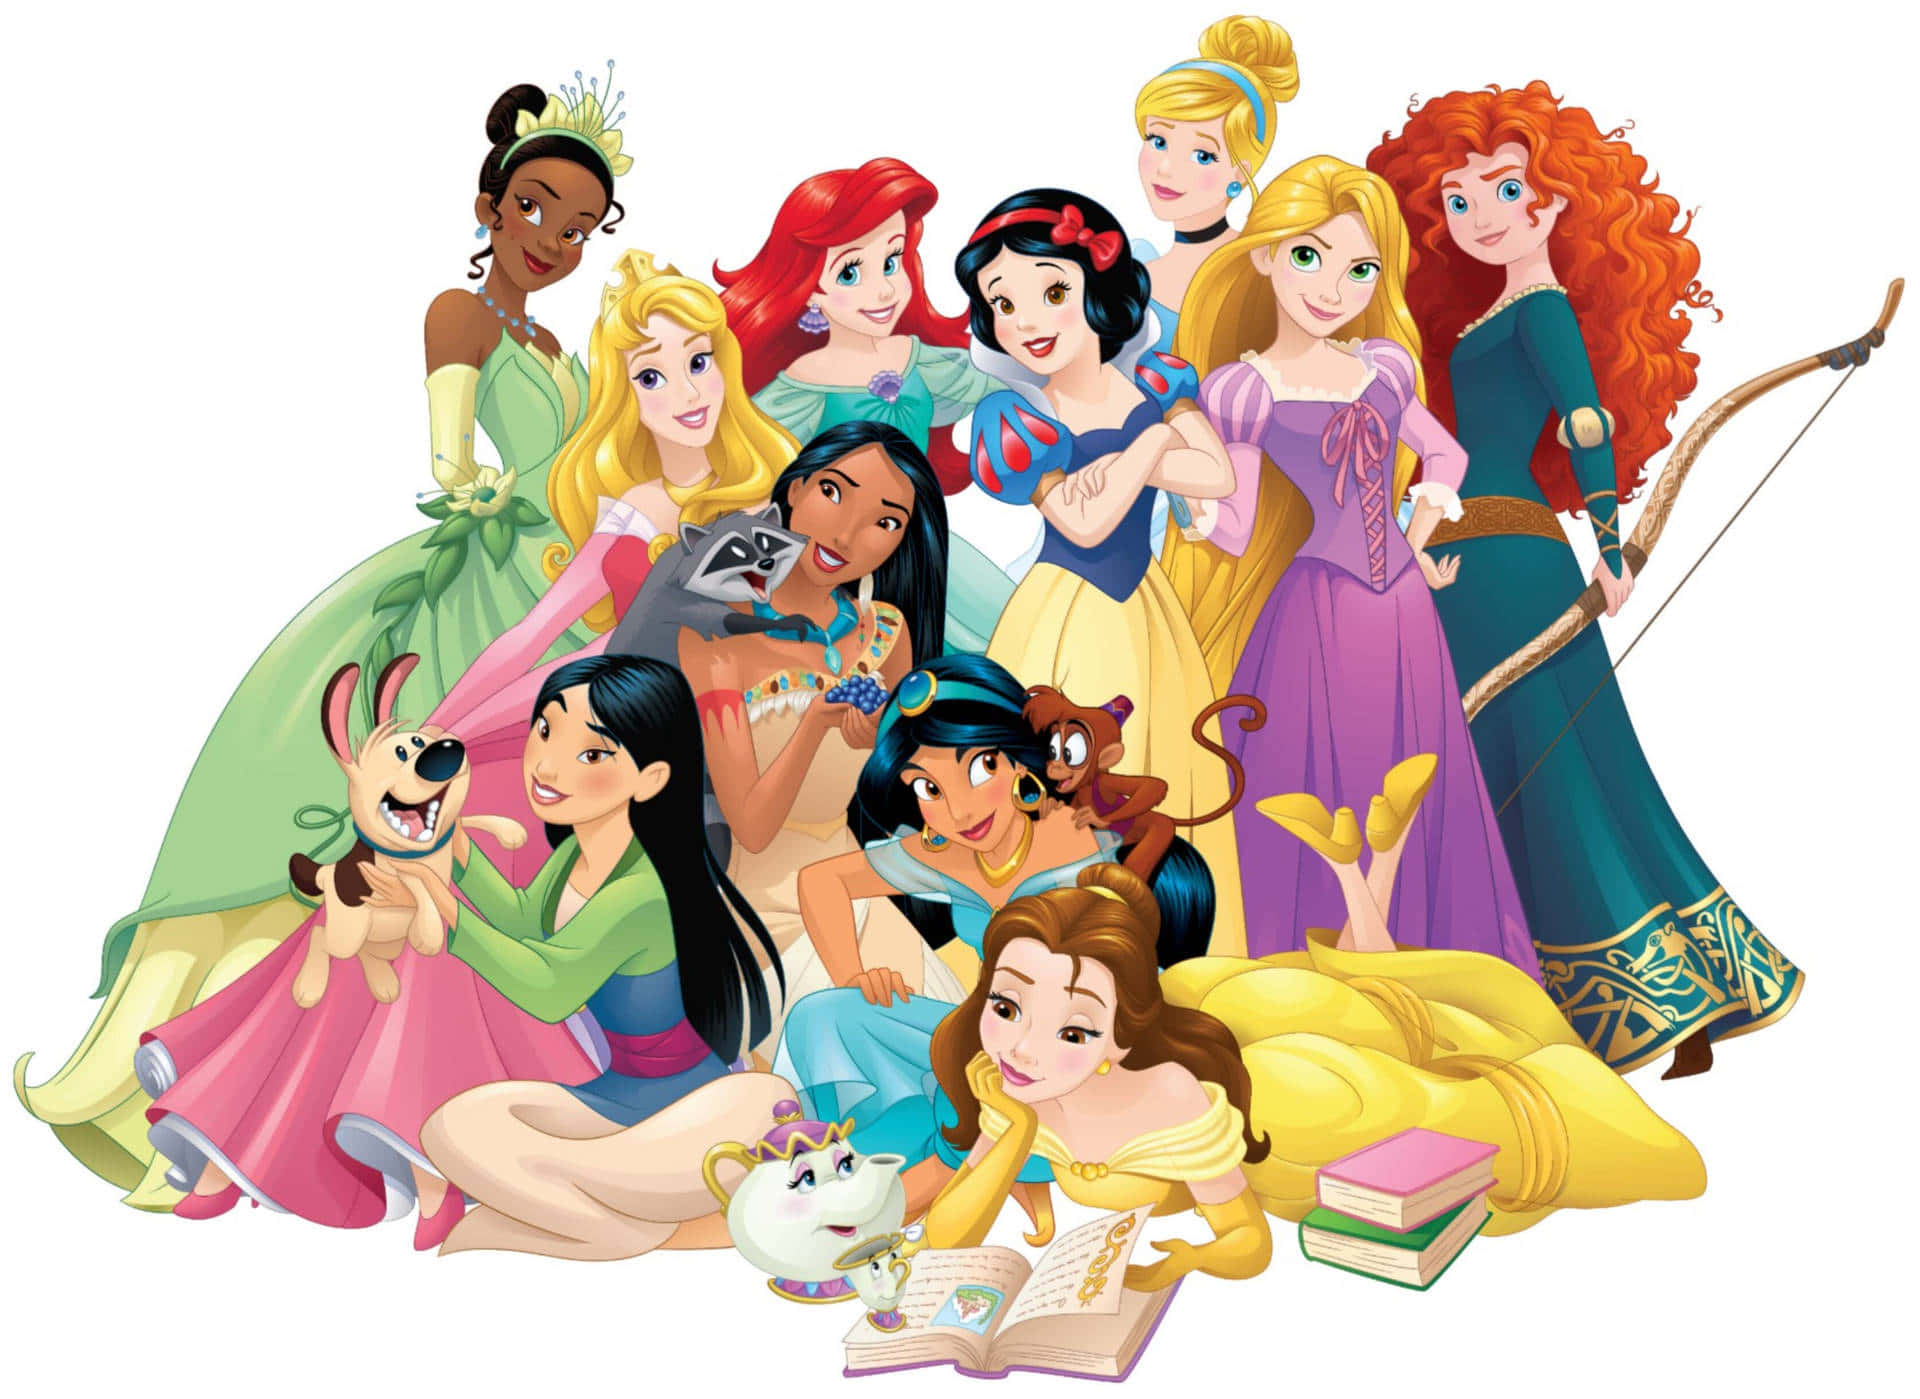 Fejrden Magtfulde Feminine Energi Af Disney-prinsesserne Med En Computer- Eller Mobilbaggrund.